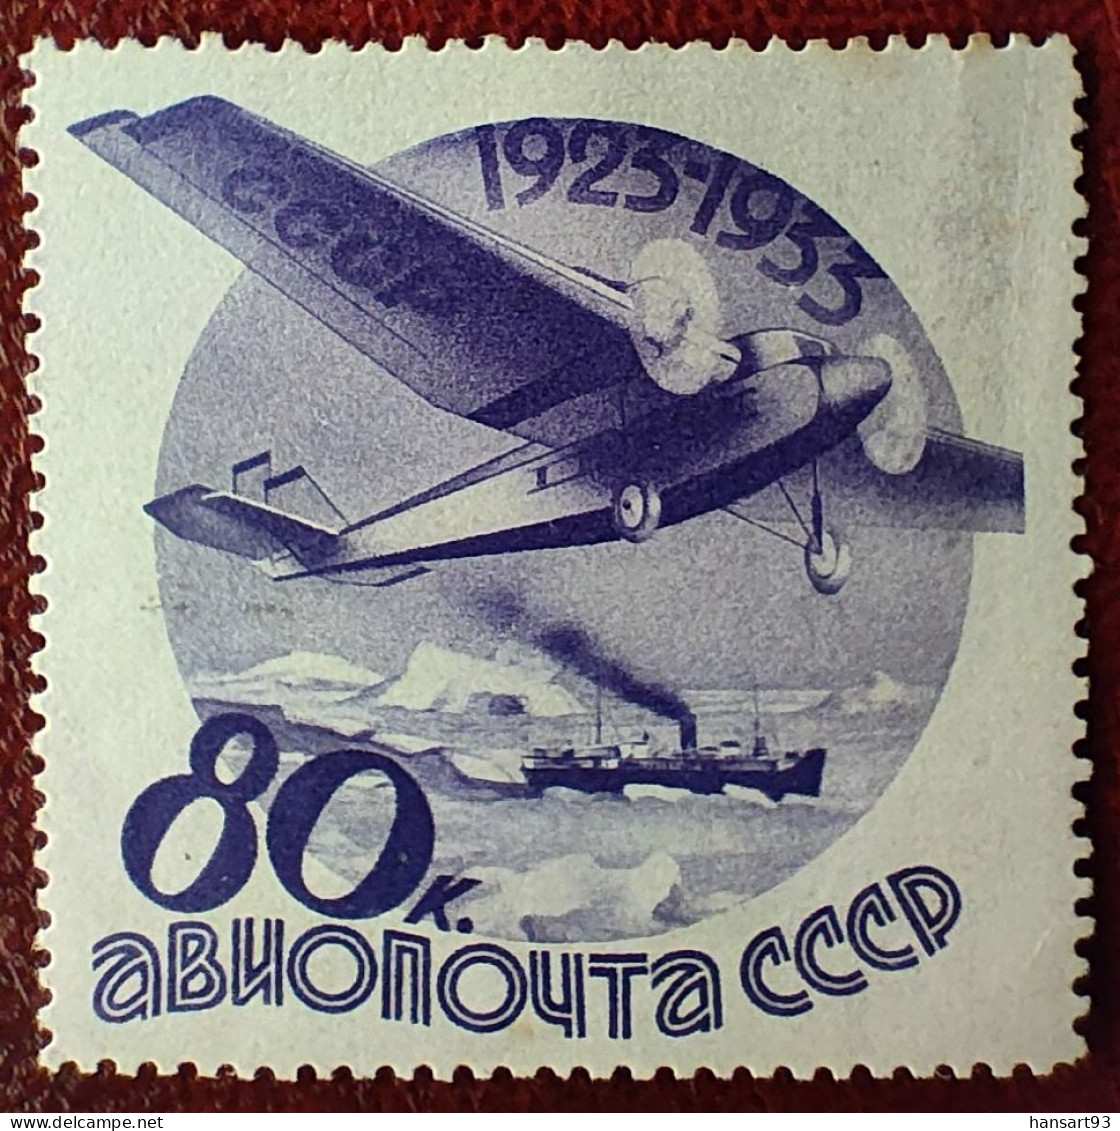 URSS Rare Poste Aérienne N° 45 N* TTB ! Cote 2020 : 50,00 Euros ! A Voir Absolument !! - Nuovi